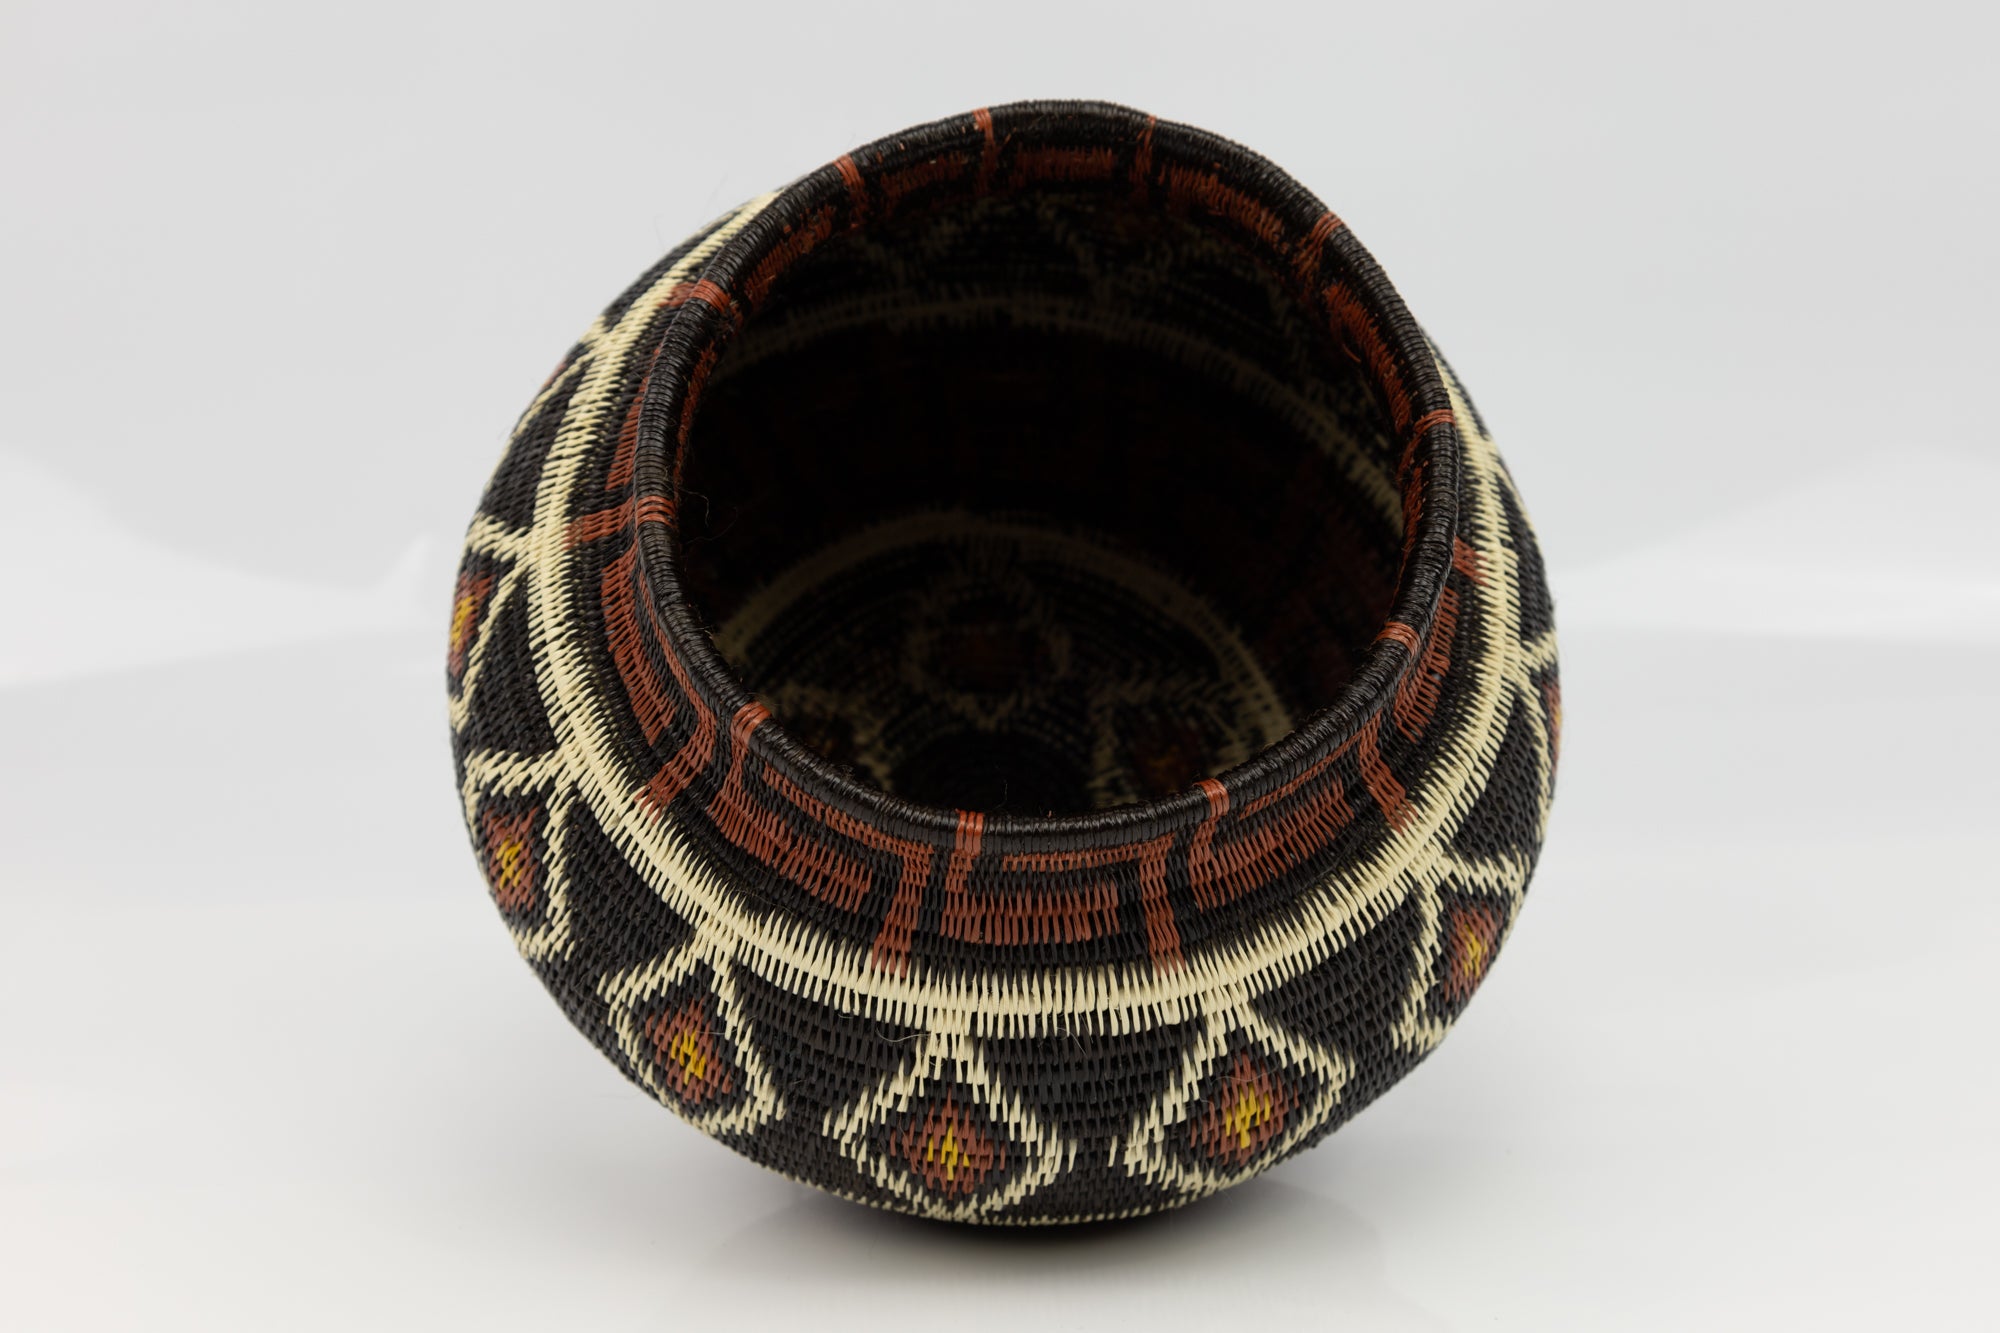 Greek Key Diamond Woven Basket